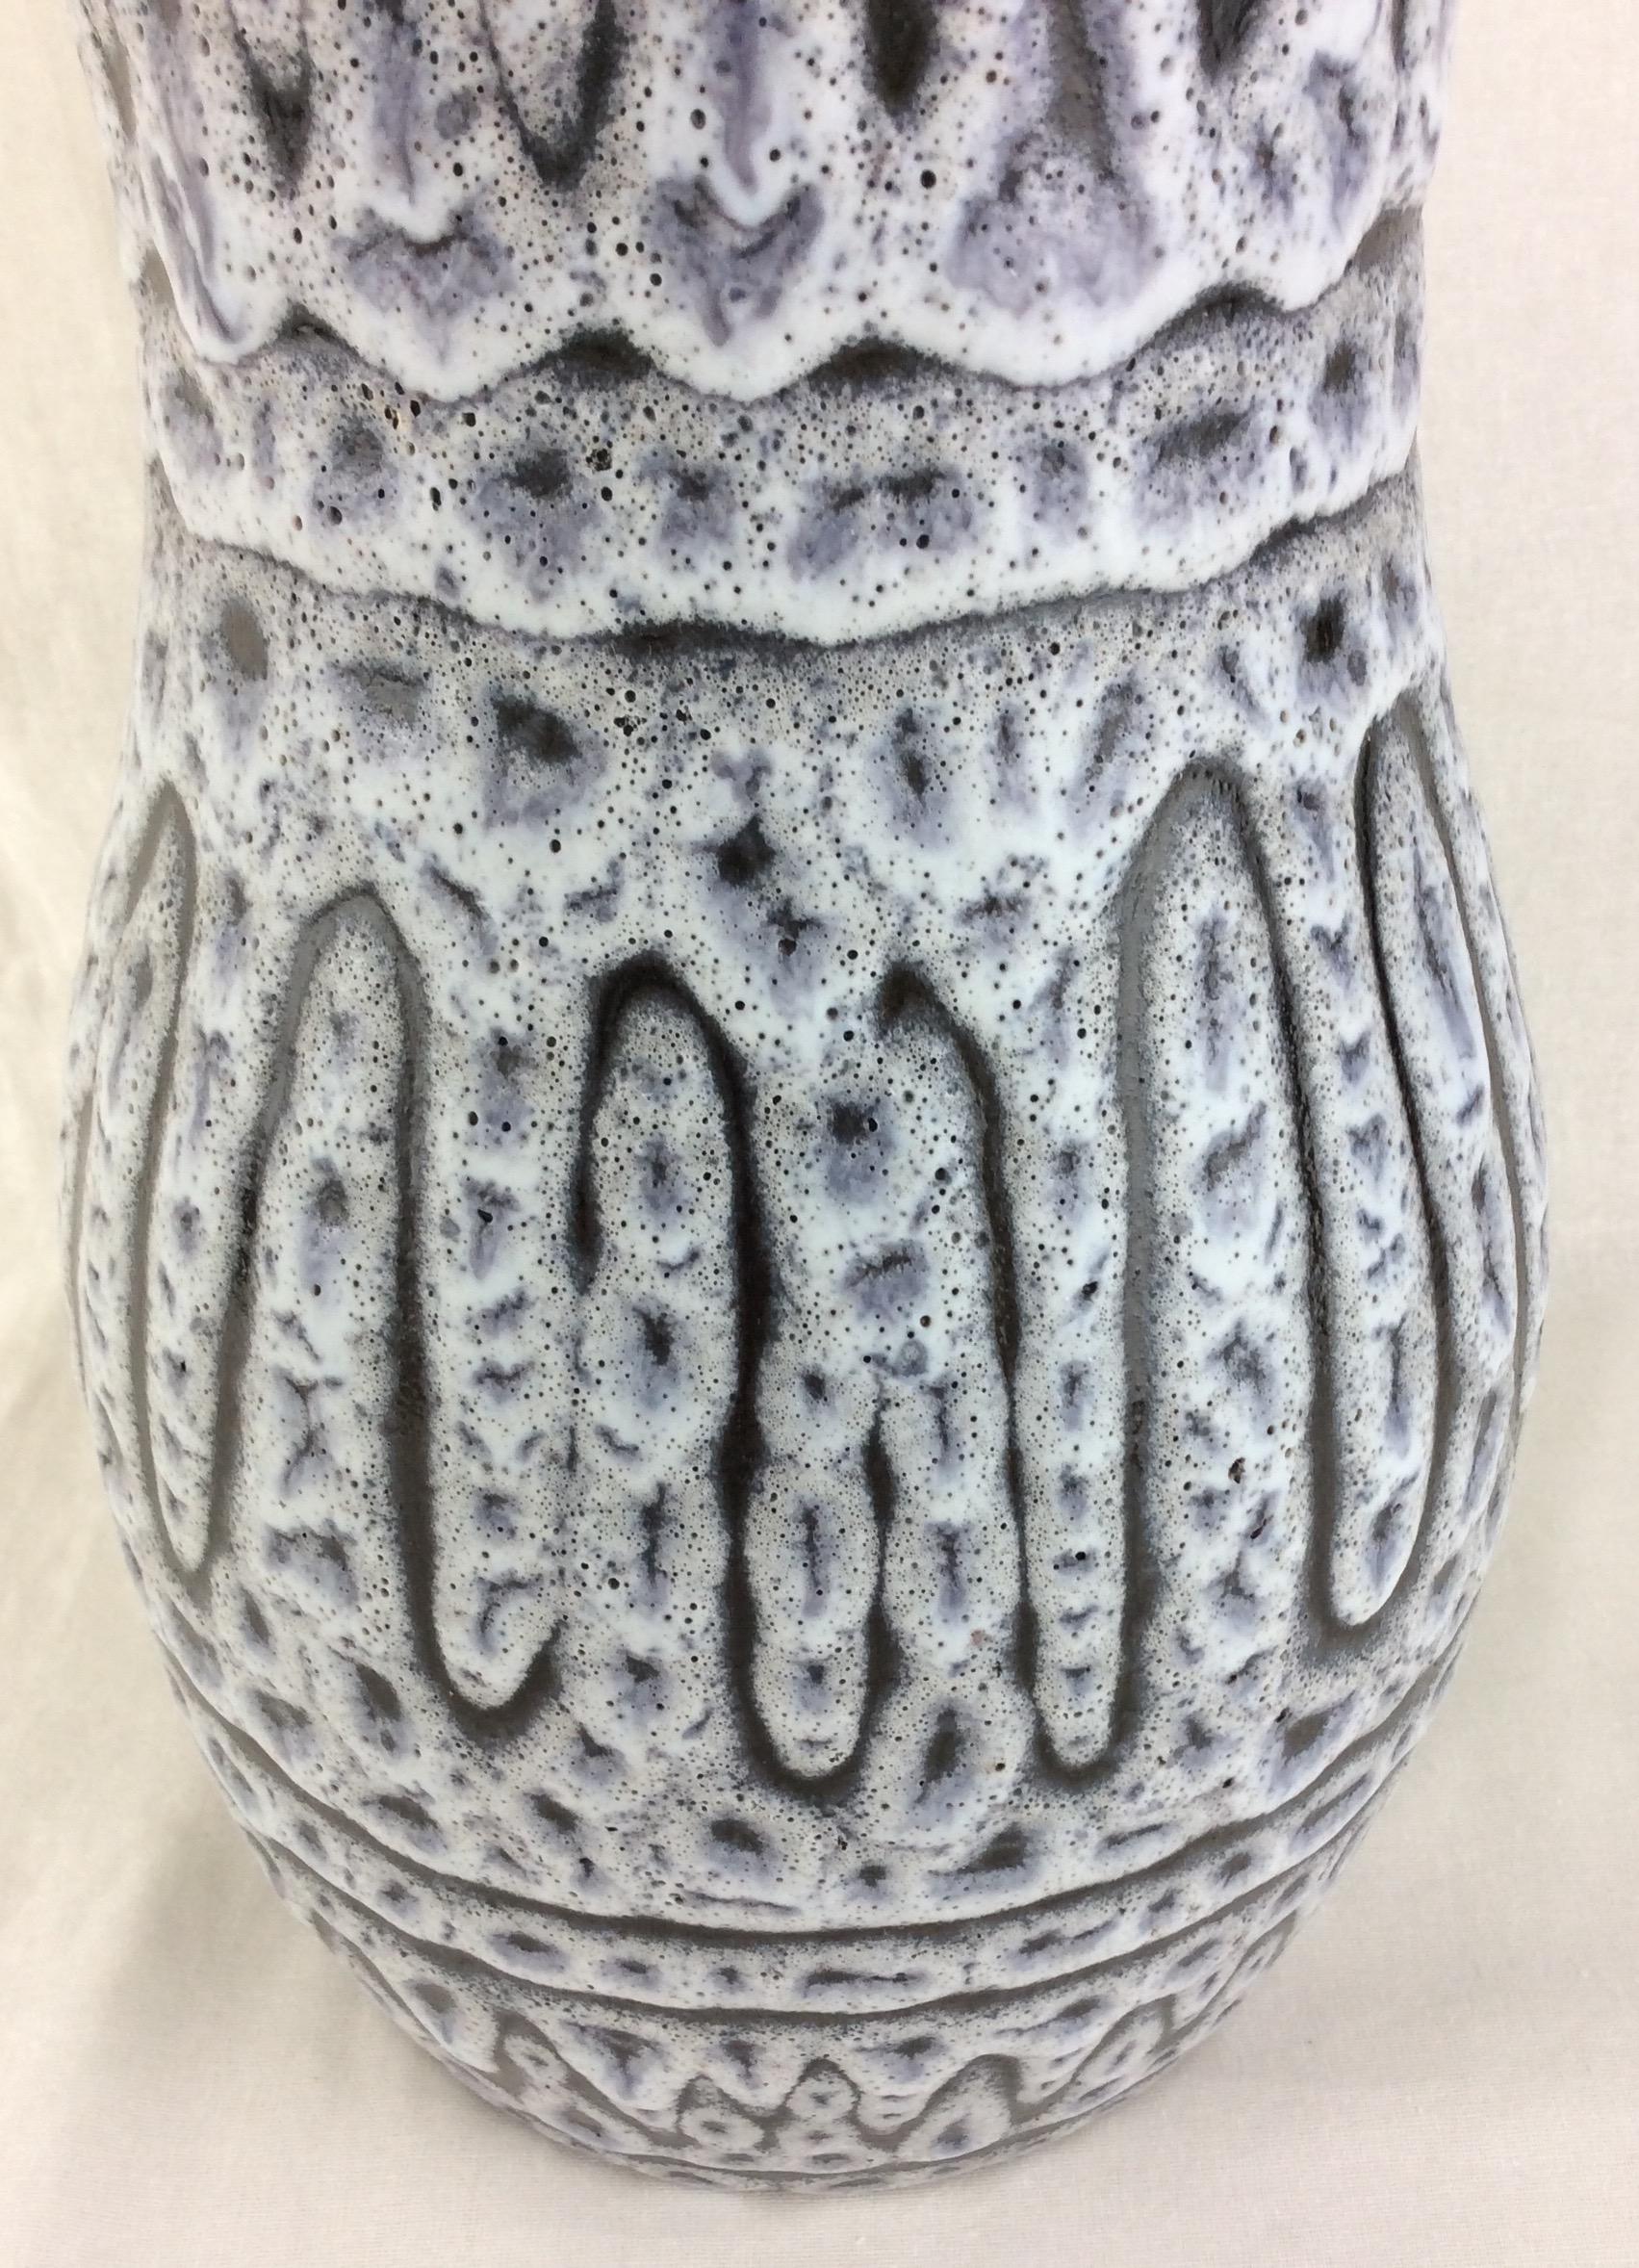 Diese schillernde glasierte Keramikvase wurde um 1950-1959 in Vallauris, Frankreich, handgefertigt.
Die grauen und weißen Grundfarben sind wirklich schön.  

Er kann jedes Regal, jeden Tisch, jede Anrichte oder Arbeitsplatte aufwerten, da er ein